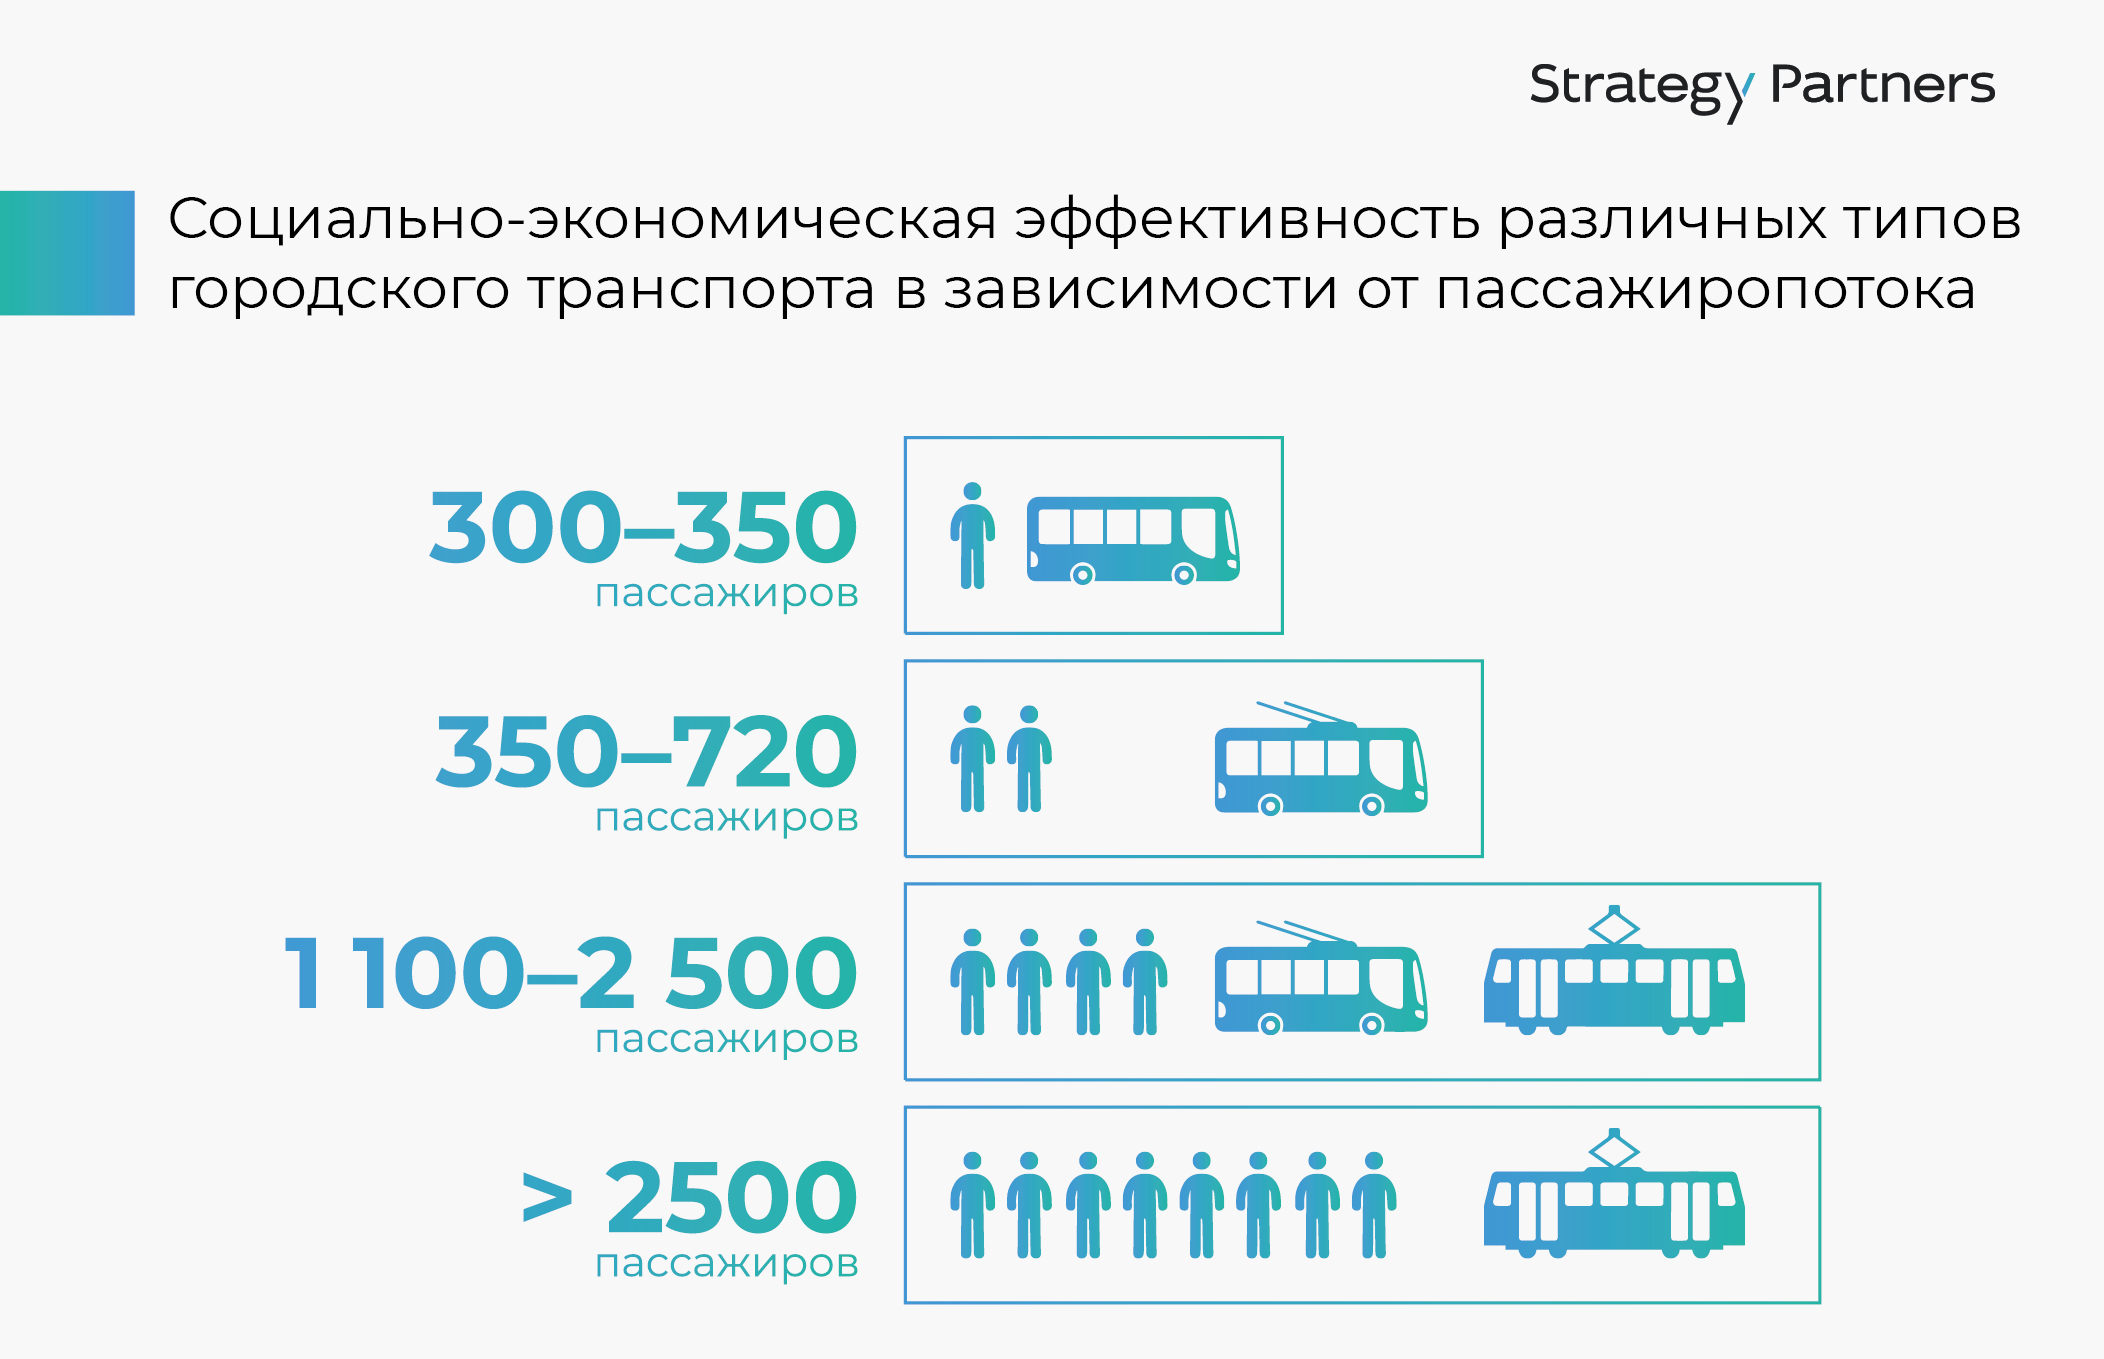 Рисунок 1. Социально-экономическая эффективность различных типов городского транспорта в  зависимости от пассажиропотока